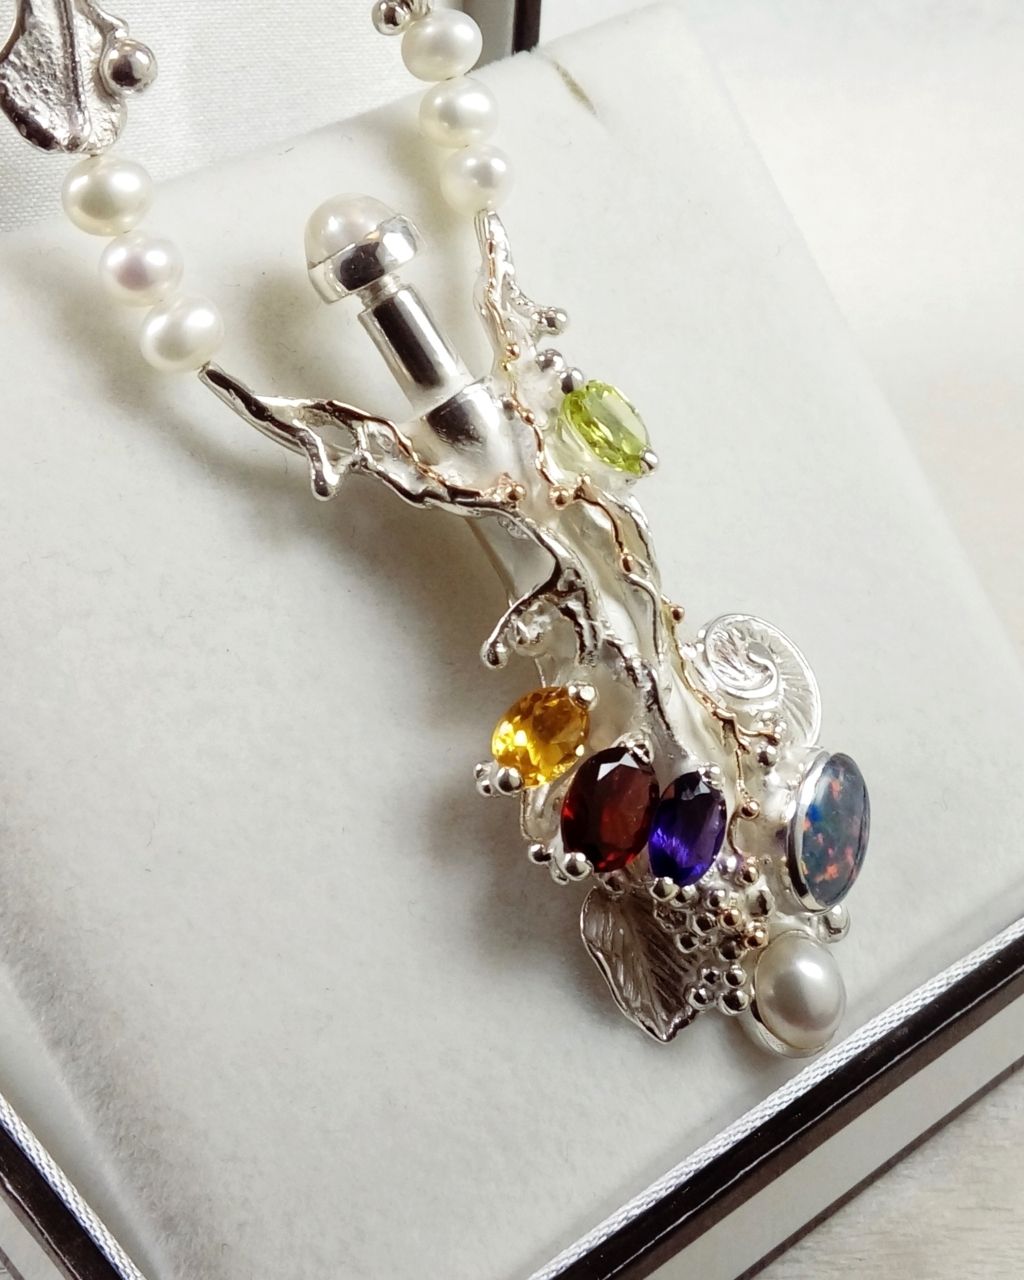 Náhrdelník Gregory Pyra Piro číslo 4041, náhrdelník s peridotem a citrinem, náhrdelník s ametystem a granátem, náhrdelník s perlami a fazetovanými drahokamy, náhrdelník s designem listů a mušlí, náhrdelník s parfémovou lahví, parfémová láhev ze stříbra a zlata, náhrdelník ze zlata a stříbro, šperky prodávané v galeriích, šperky s doručením k vám domů v Hradci, šperky s doručením k vám domů v Mladé, šperky s doručením k vám domů v Liberci